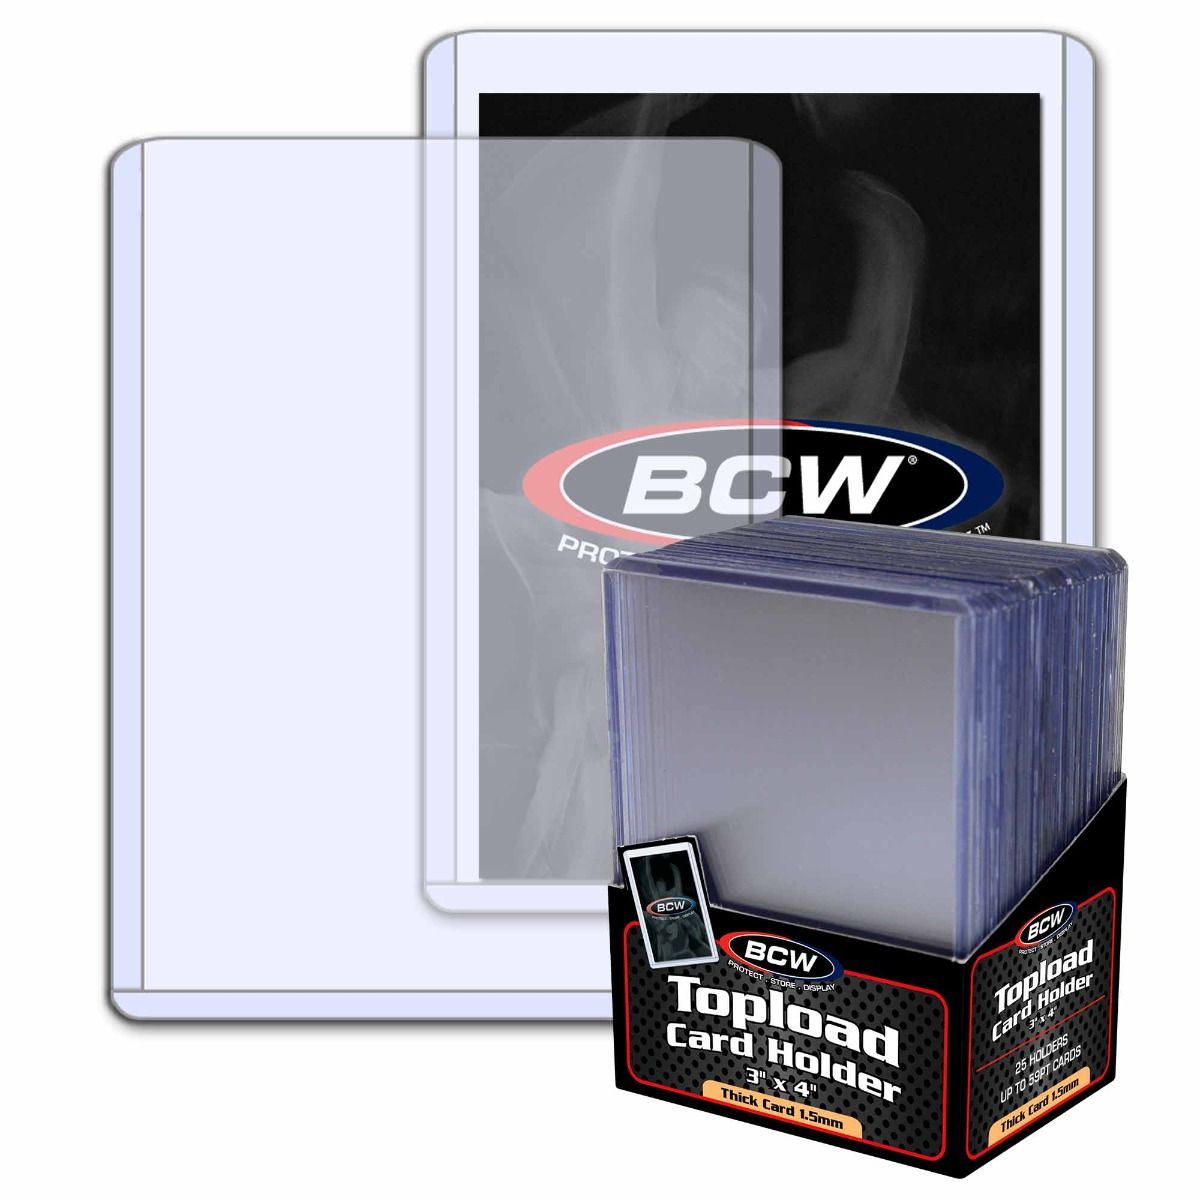 BCW Toploader Card Holder 3x4 1.5mm